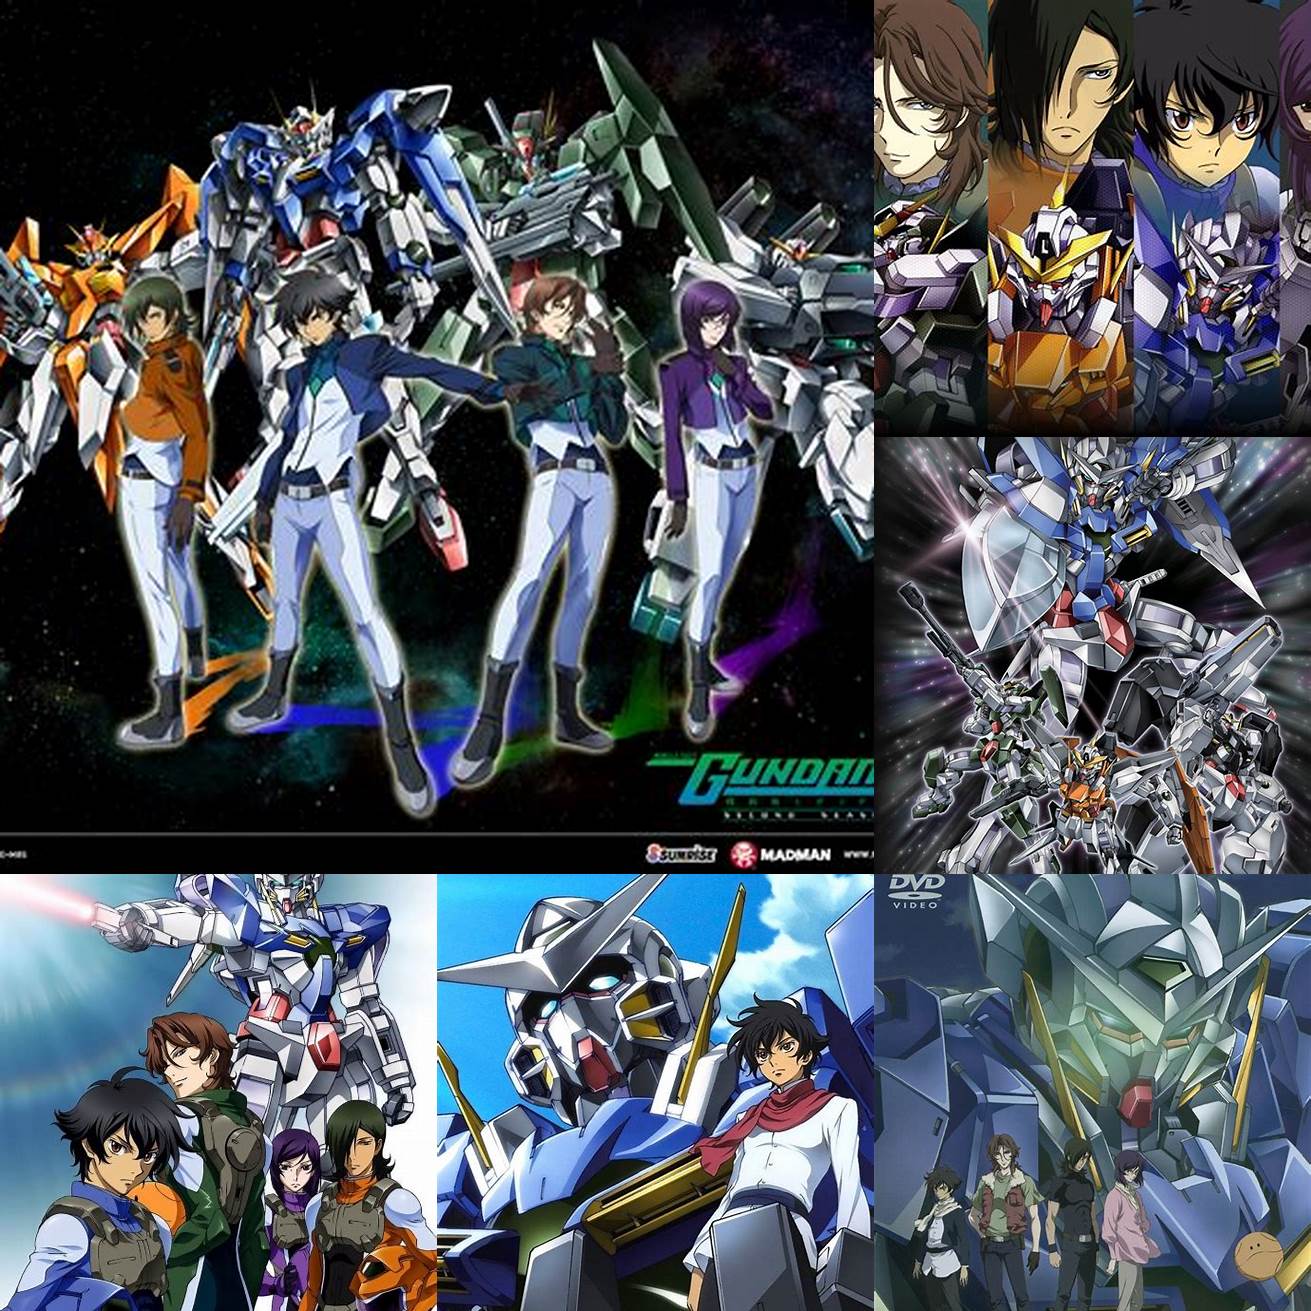 Q Siapa antagonis utama di Gundam 00